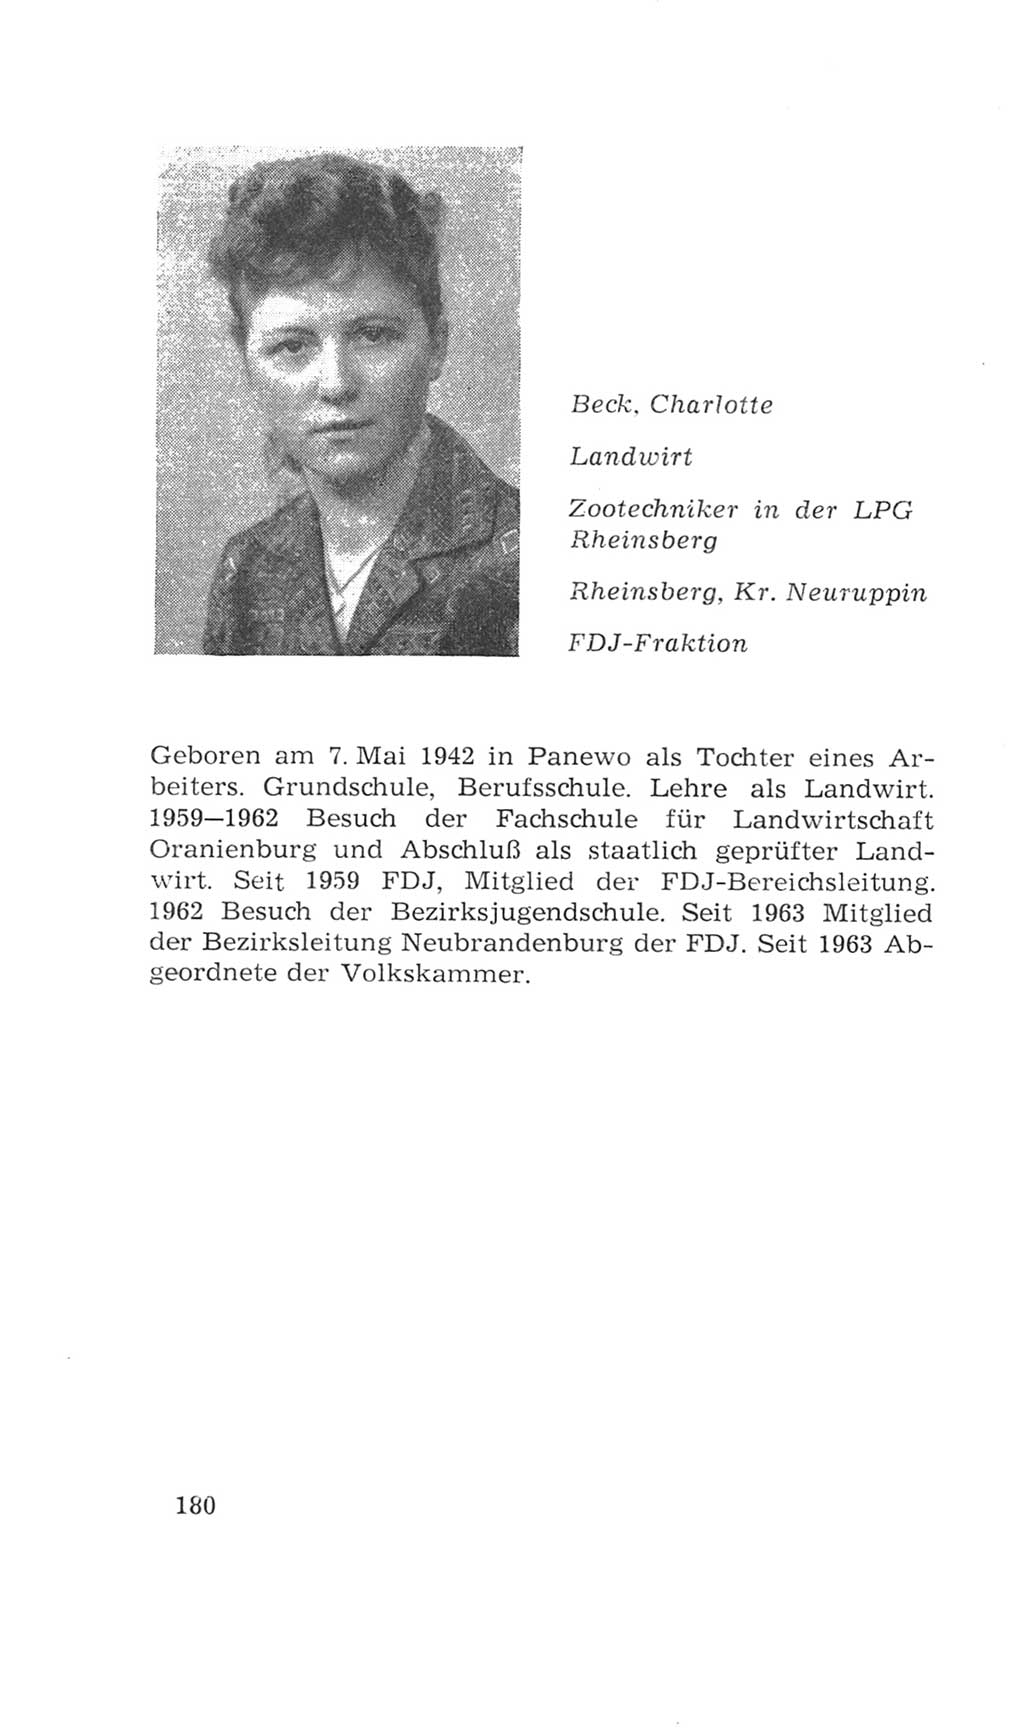 Volkskammer (VK) der Deutschen Demokratischen Republik (DDR), 4. Wahlperiode 1963-1967, Seite 180 (VK. DDR 4. WP. 1963-1967, S. 180)